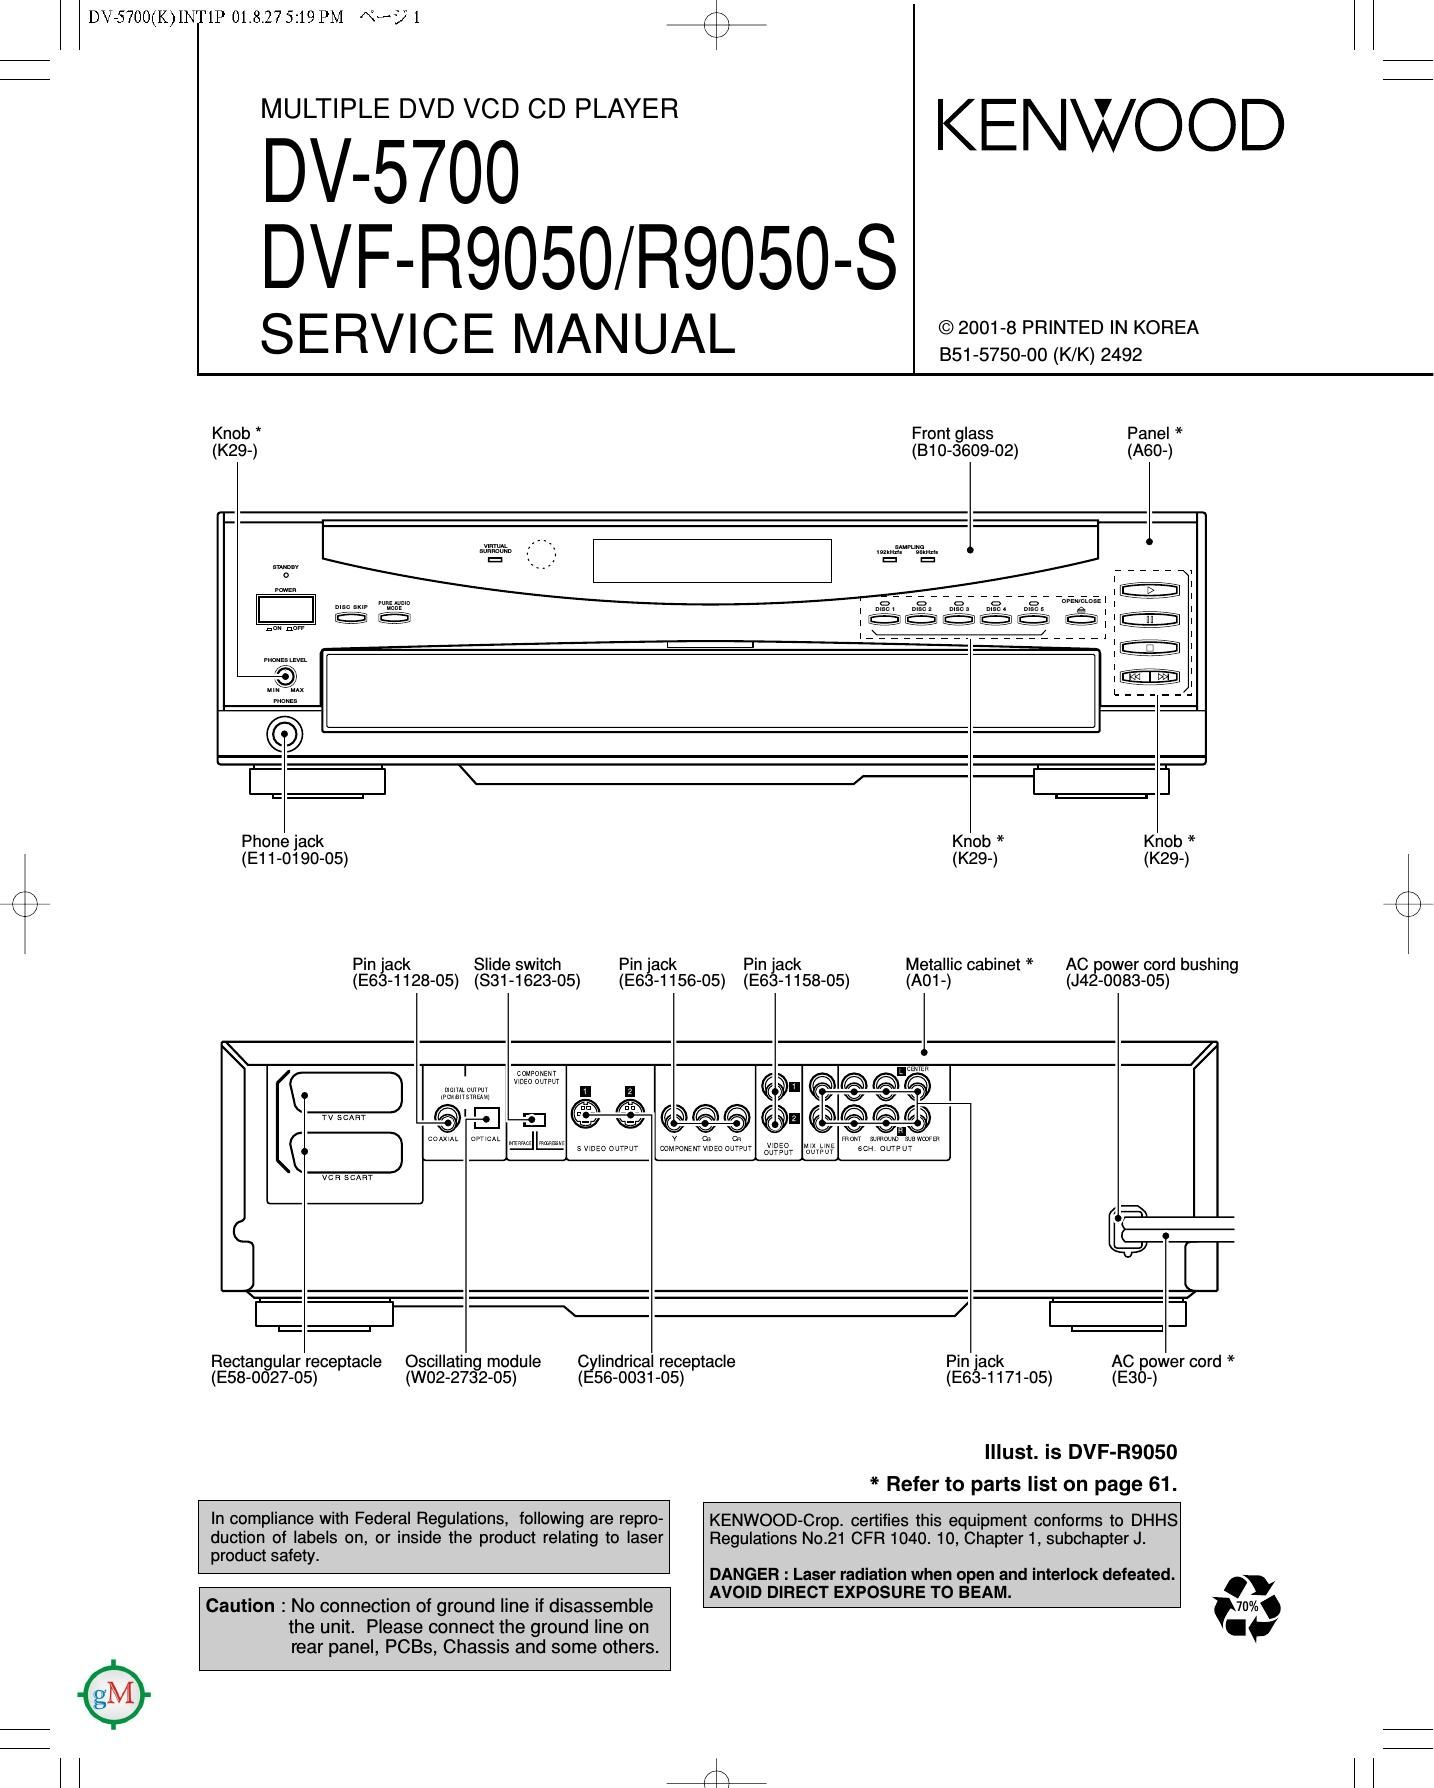 Kenwood DV 5700 Service Manual